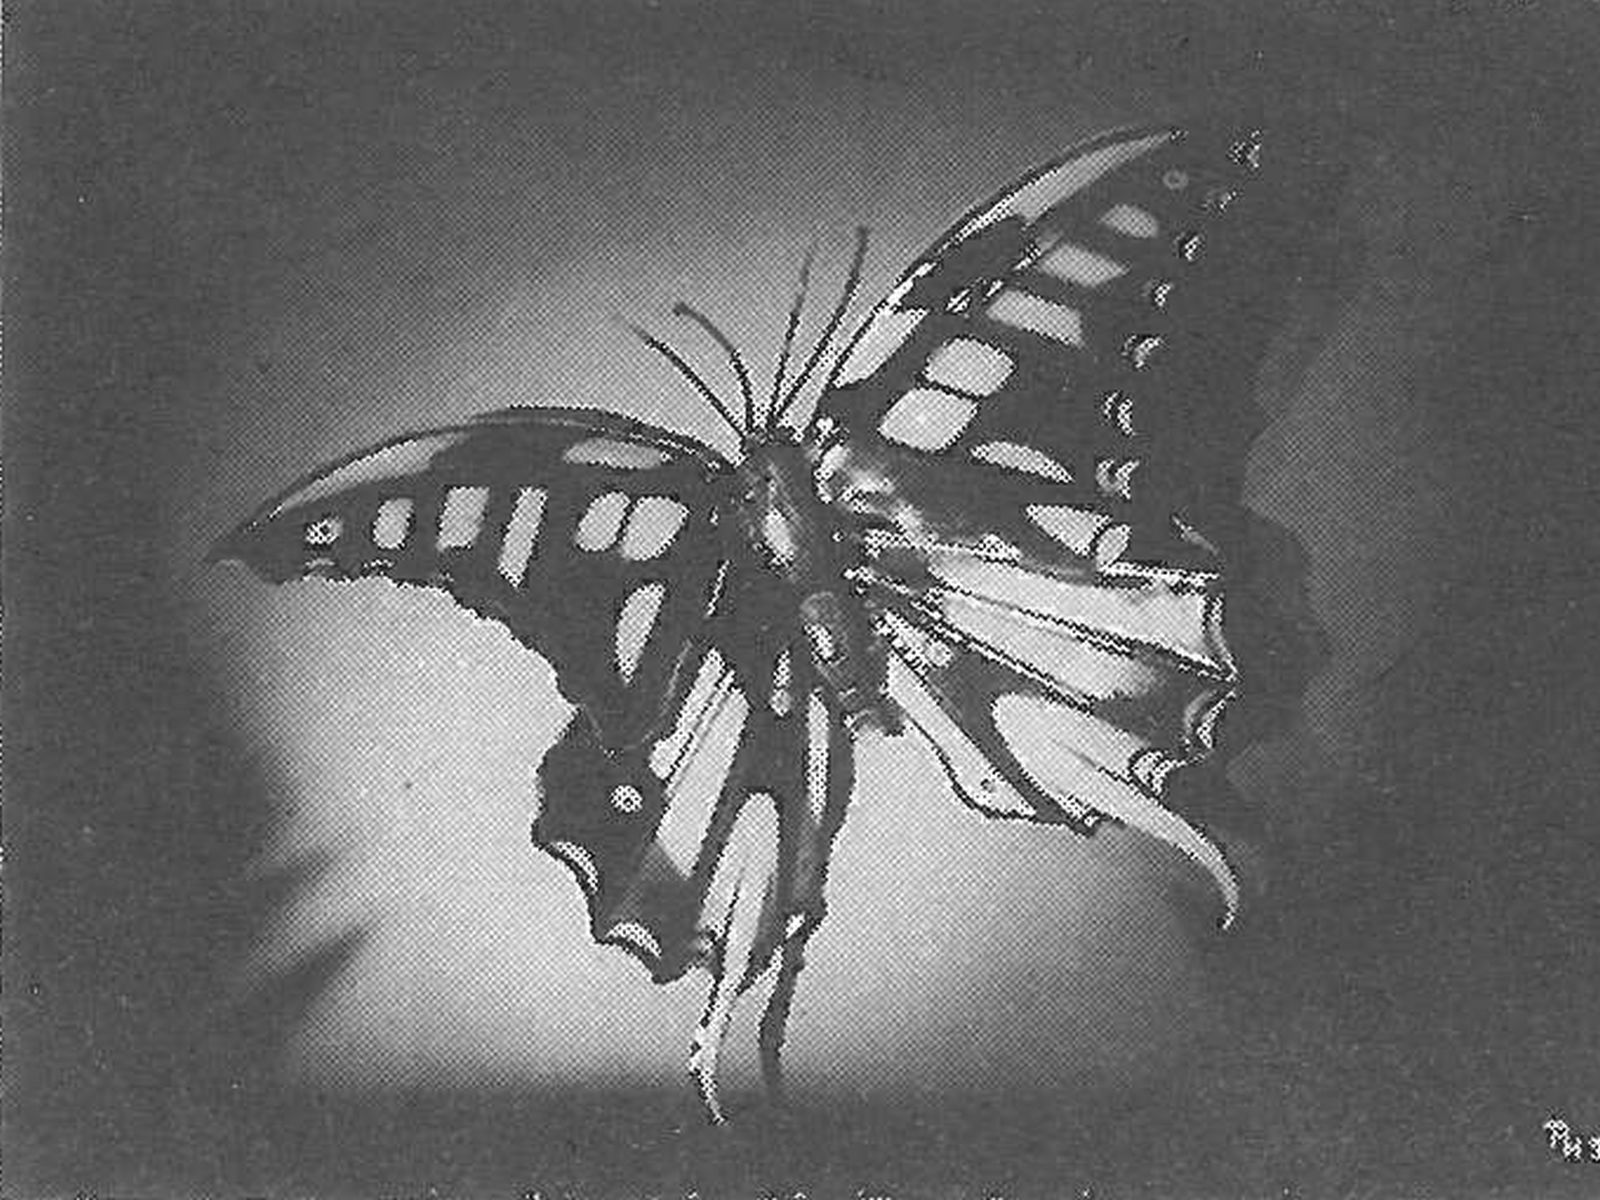  Schopflocher Skizzen Ganzstahlbild Schmetterling - Bild wird mit einem Klick vergrößert 